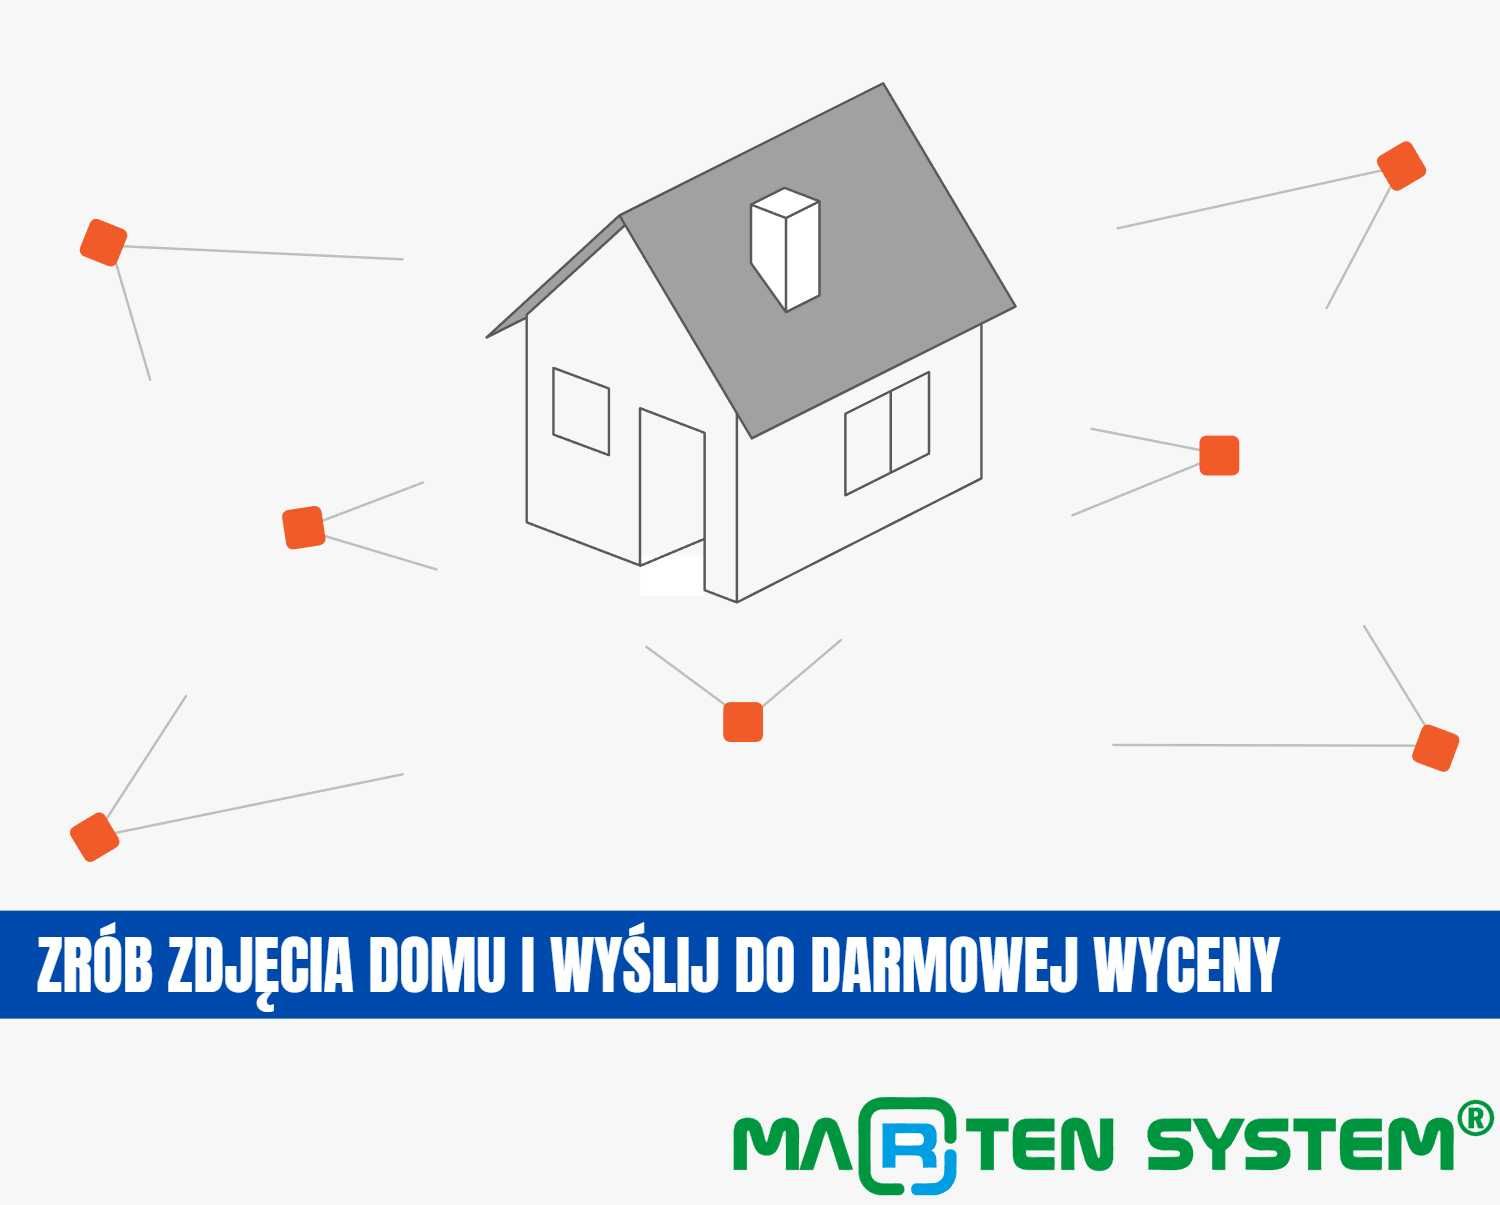 Zwalczanie kuny domowej i naprawa szkód w dachu Wrocław